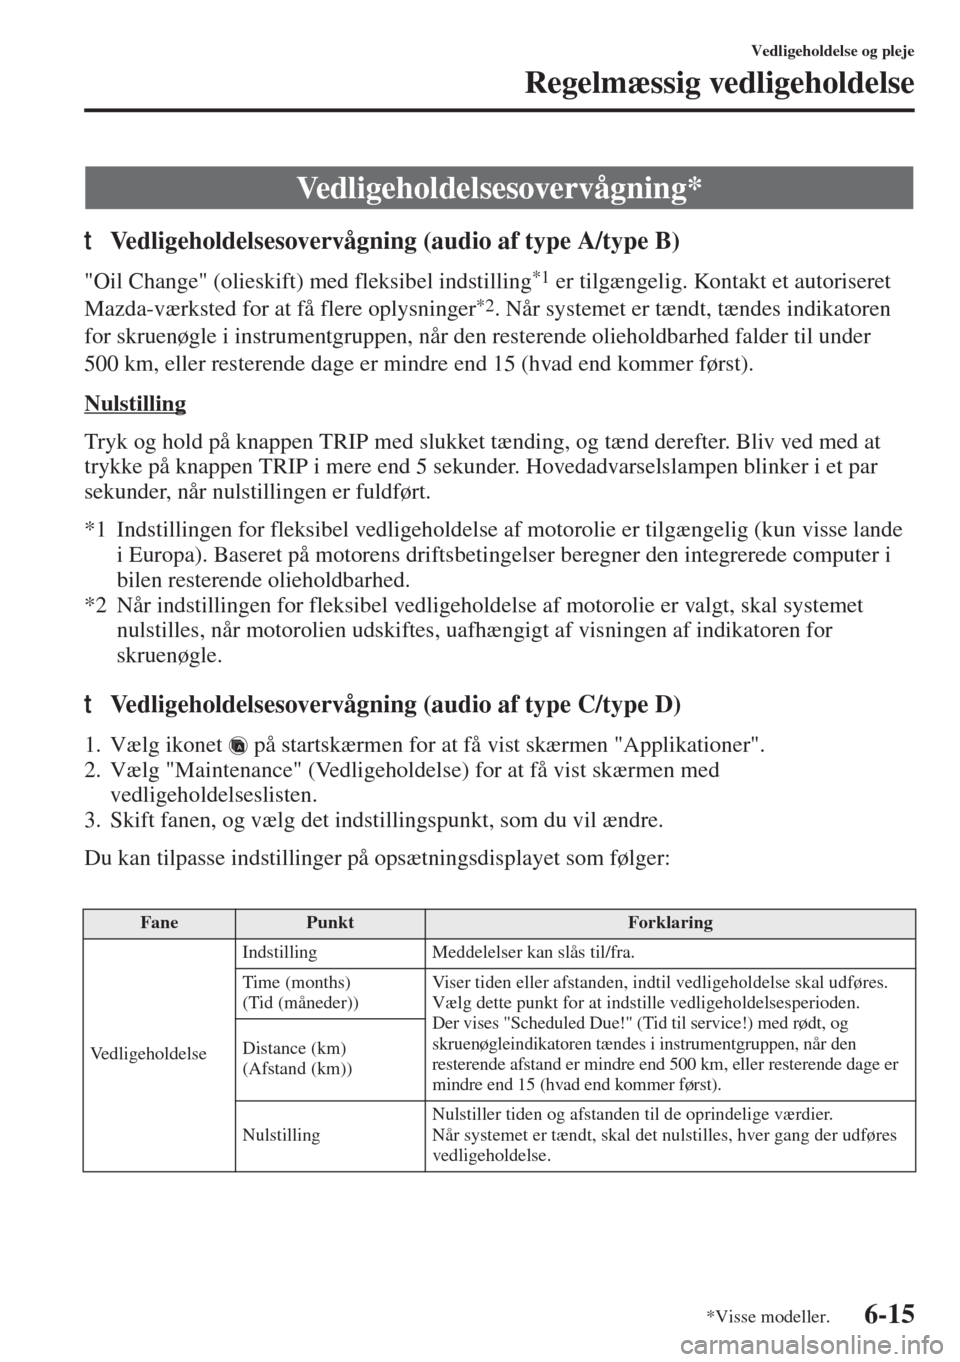 MAZDA MODEL 3 HATCHBACK 2015  Instruktionsbog (in Danish) 6-15
Vedligeholdelse og pleje
Regelmæssig vedligeholdelse
tVedligeholdelsesovervågning (audio af type A/type B)
"Oil Change" (olieskift) med fleksibel indstilling*1 er tilgængelig. Kontakt et autor